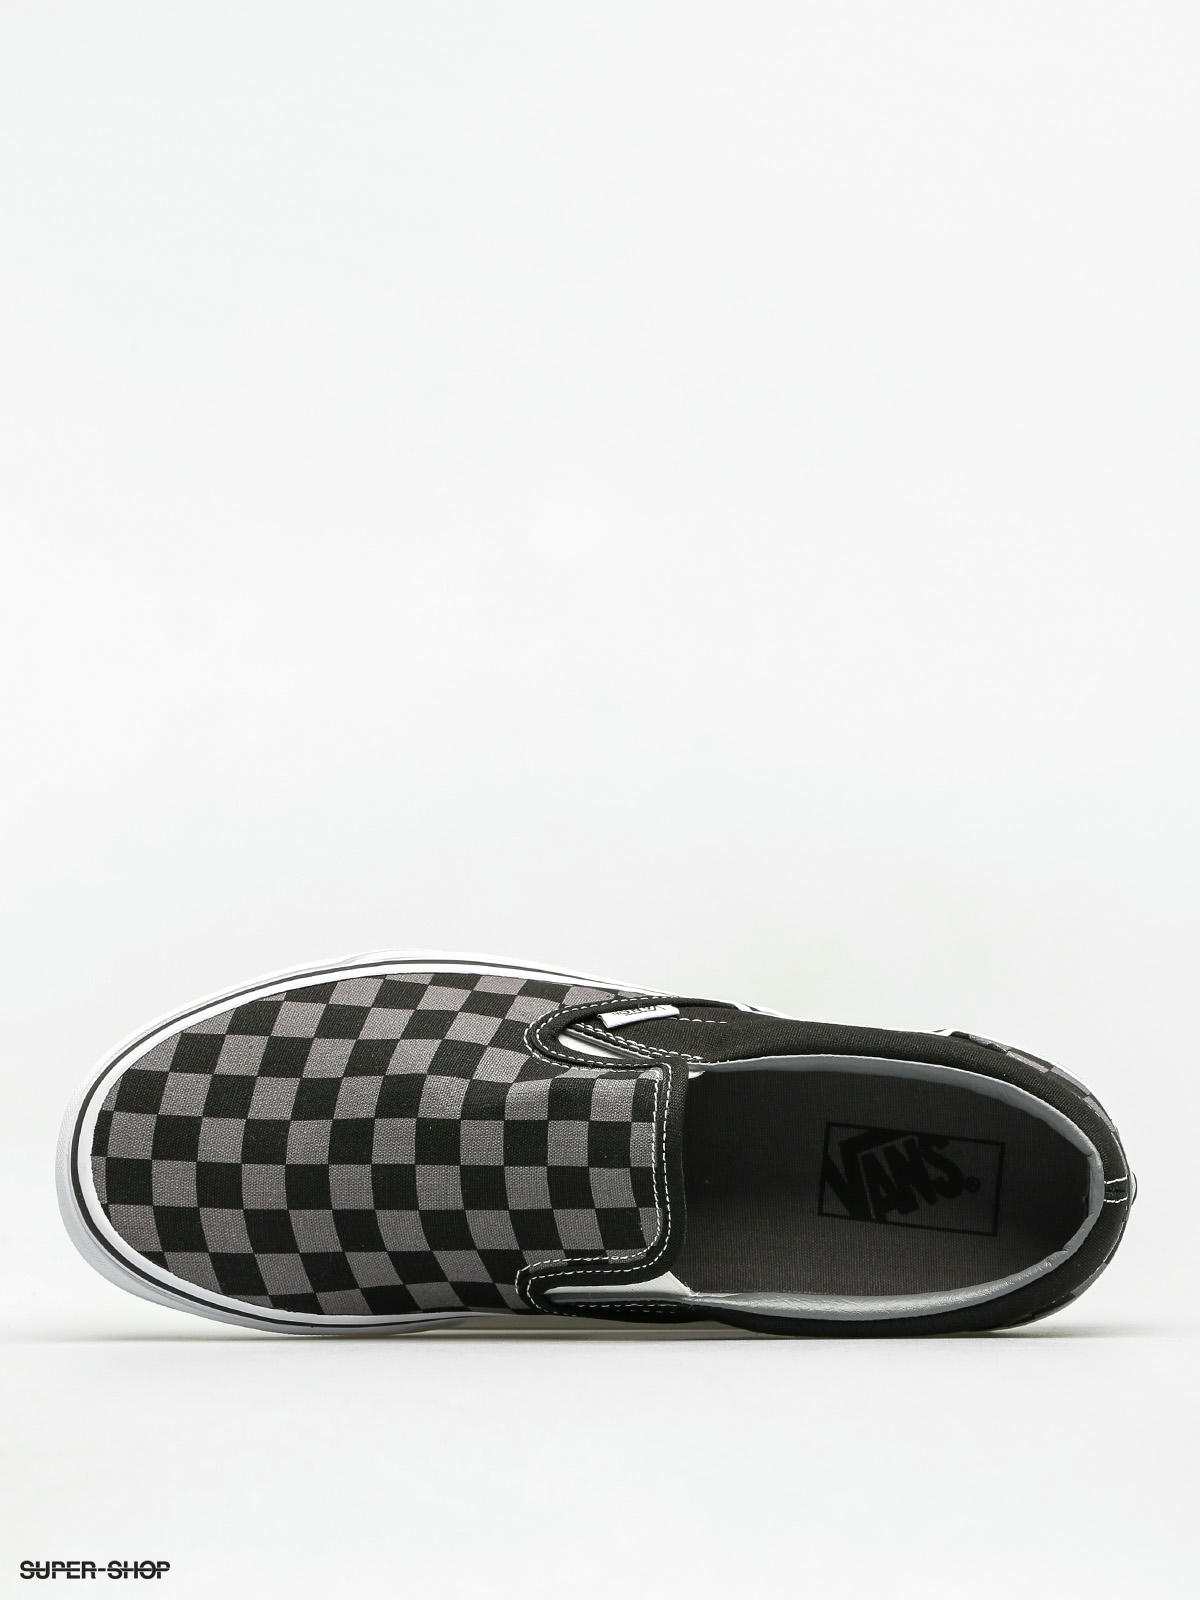 checkerboard van shoes